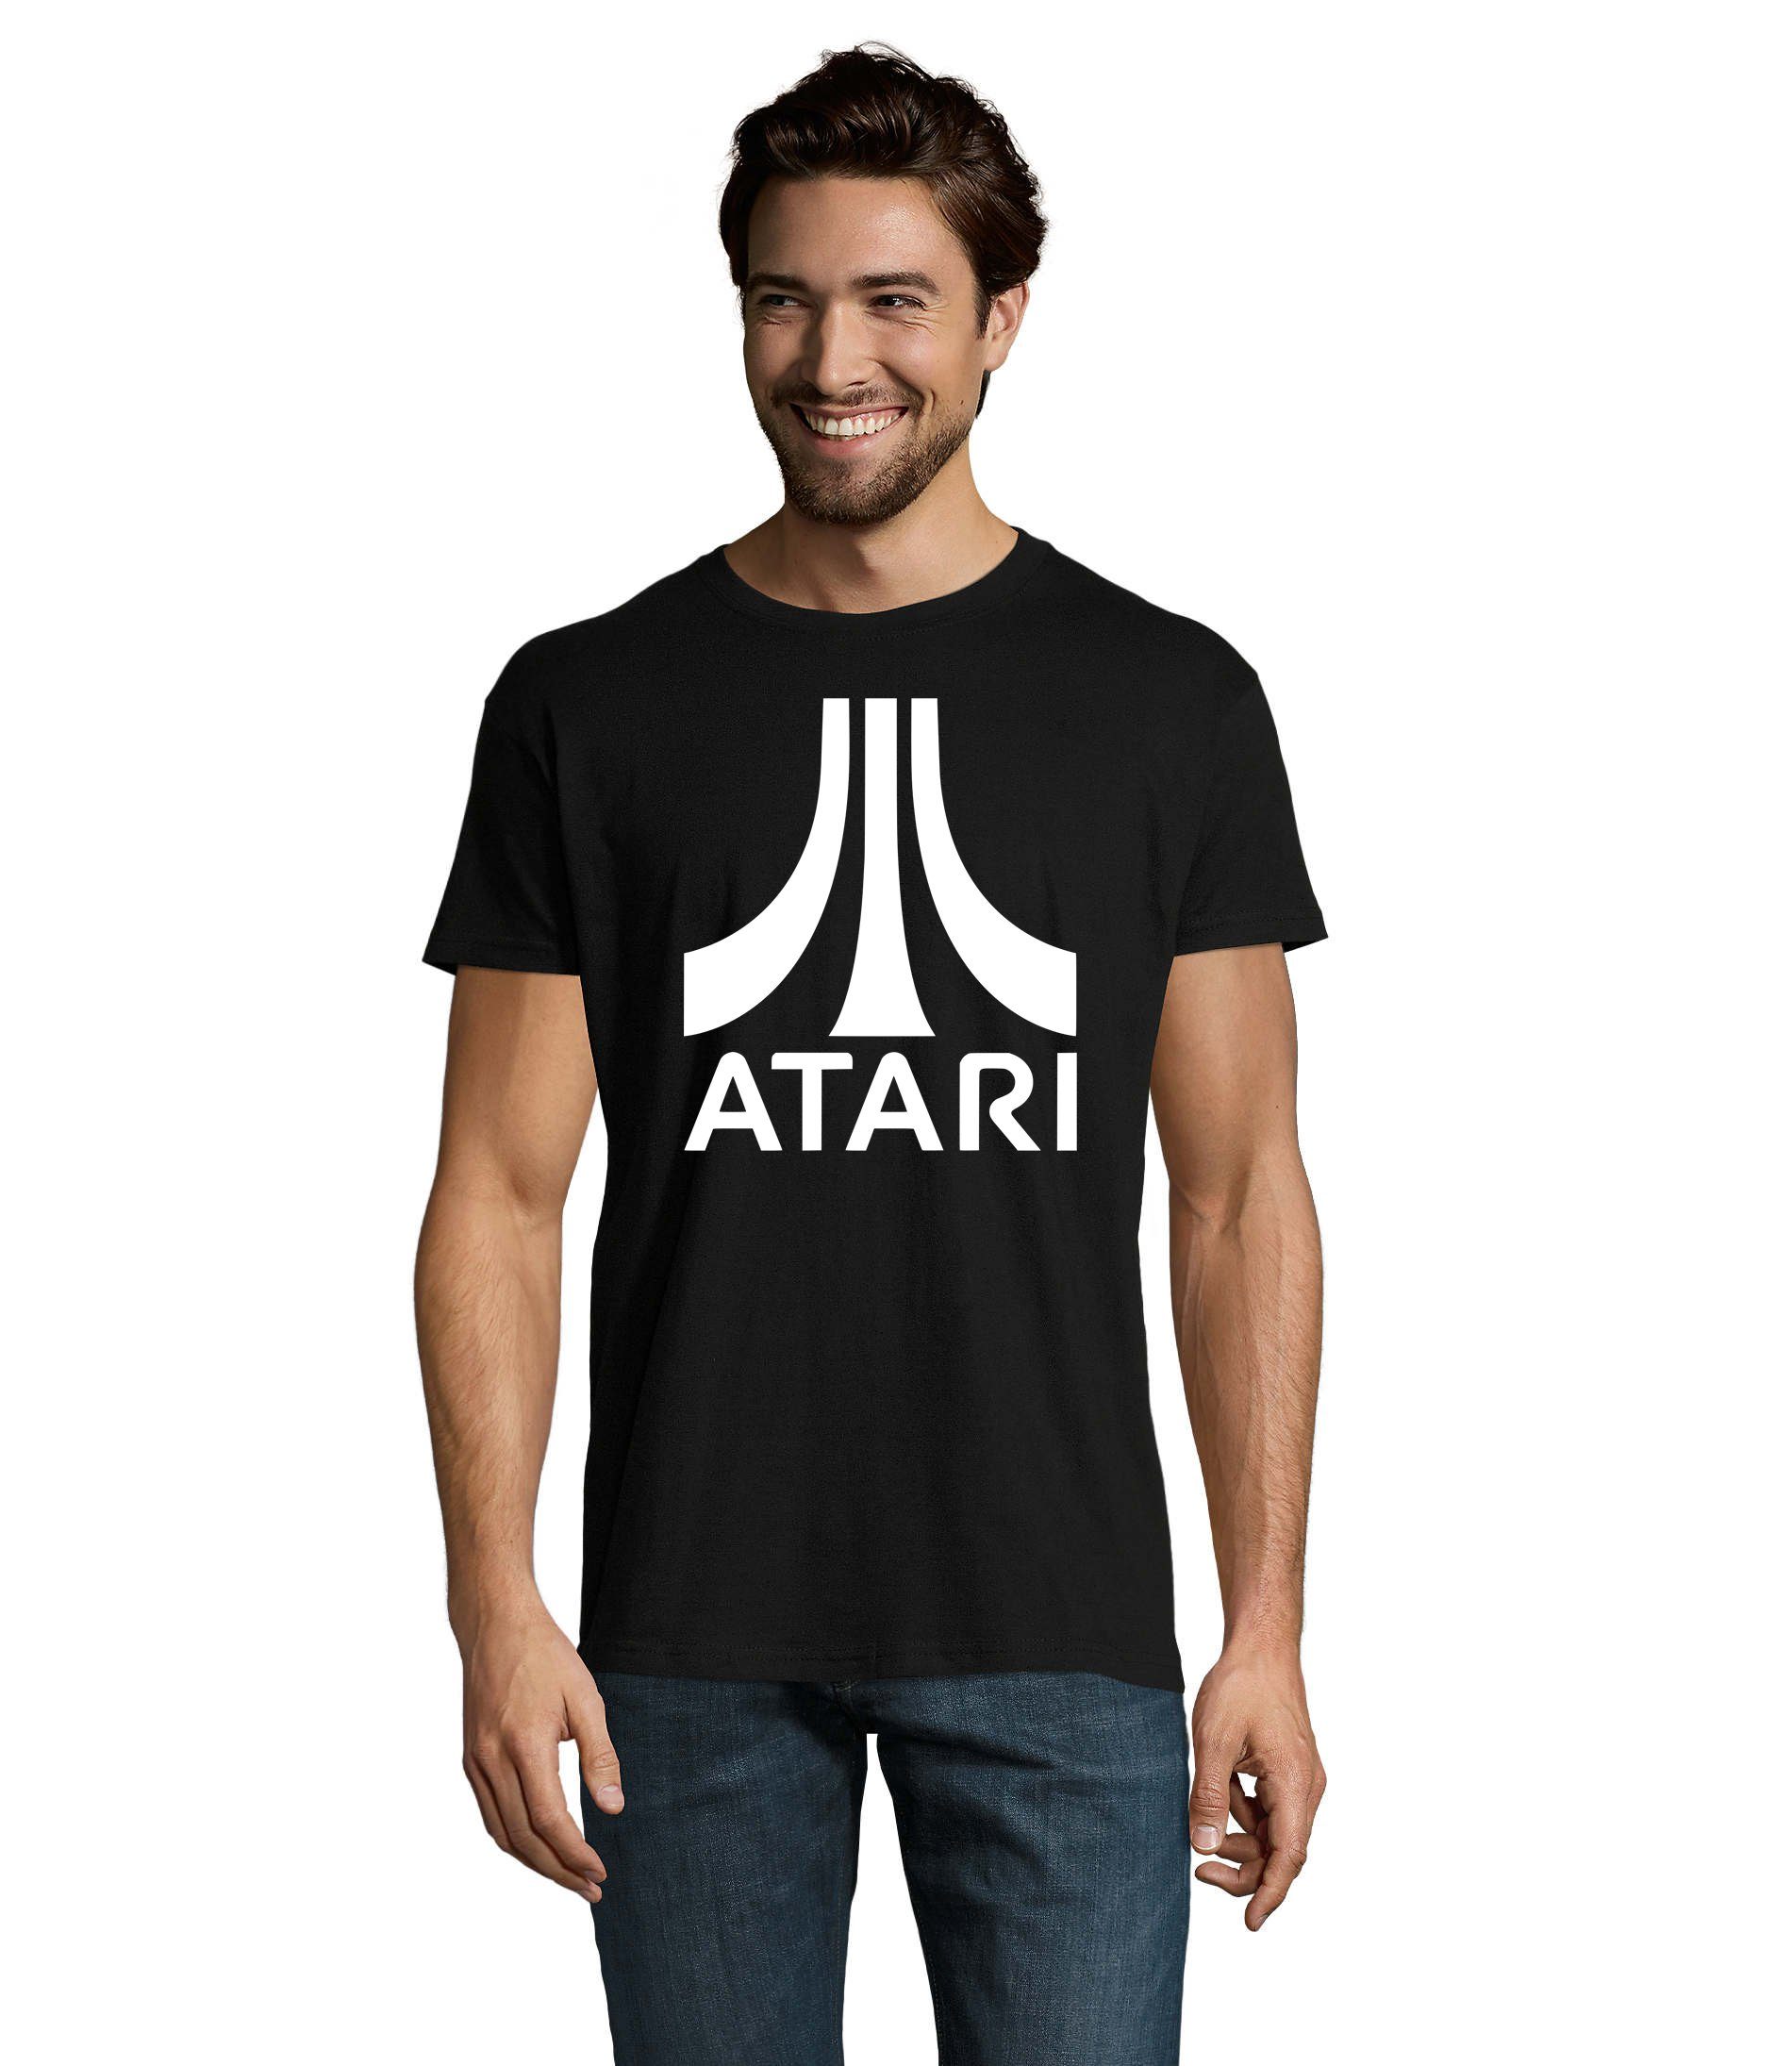 Gamer Brownie & Schwarz Herren T-Shirt Konsole Atari Gaming Blondie Spiele Nintendo